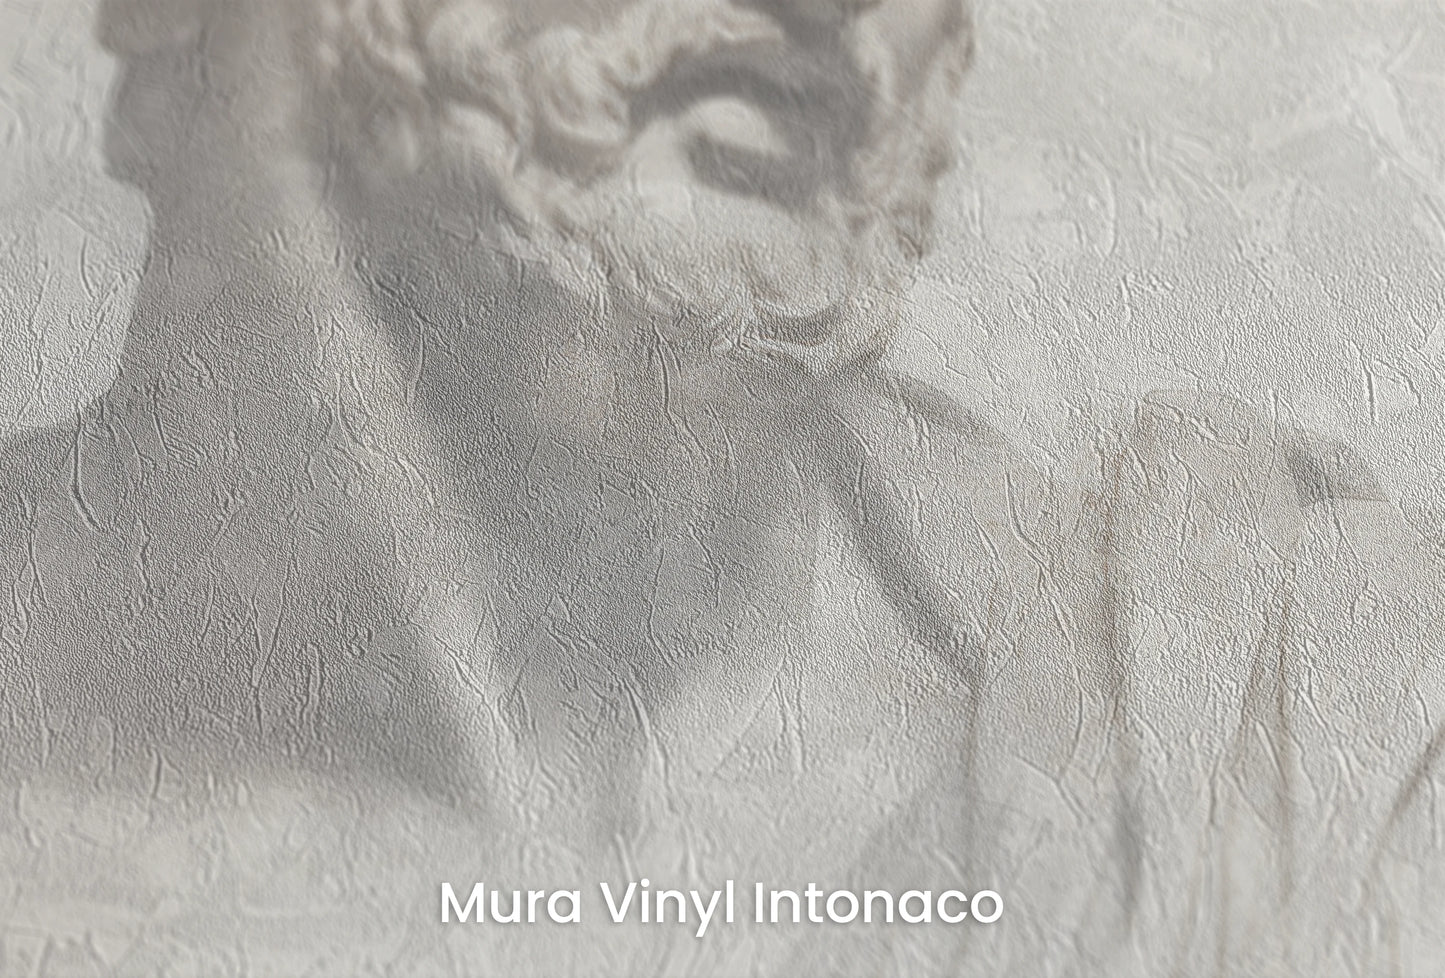 Zbliżenie na artystyczną fototapetę o nazwie Athenian Discourse na podłożu Mura Vinyl Intonaco - struktura tartego tynku.